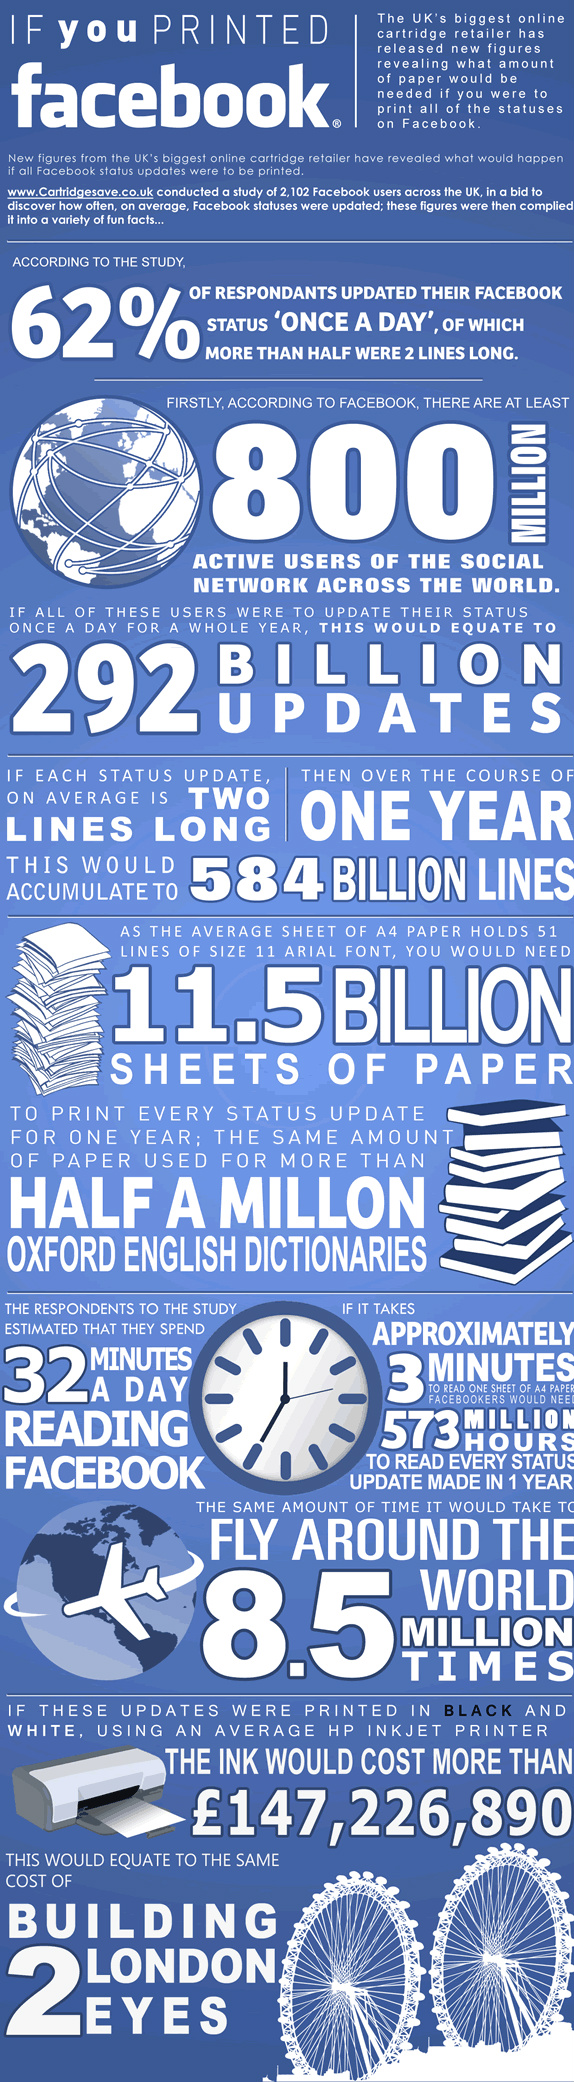 ¿Cuántas hojas de papel necesitaríamos para imprimir las actualizaciones de estado de Facebook? 1